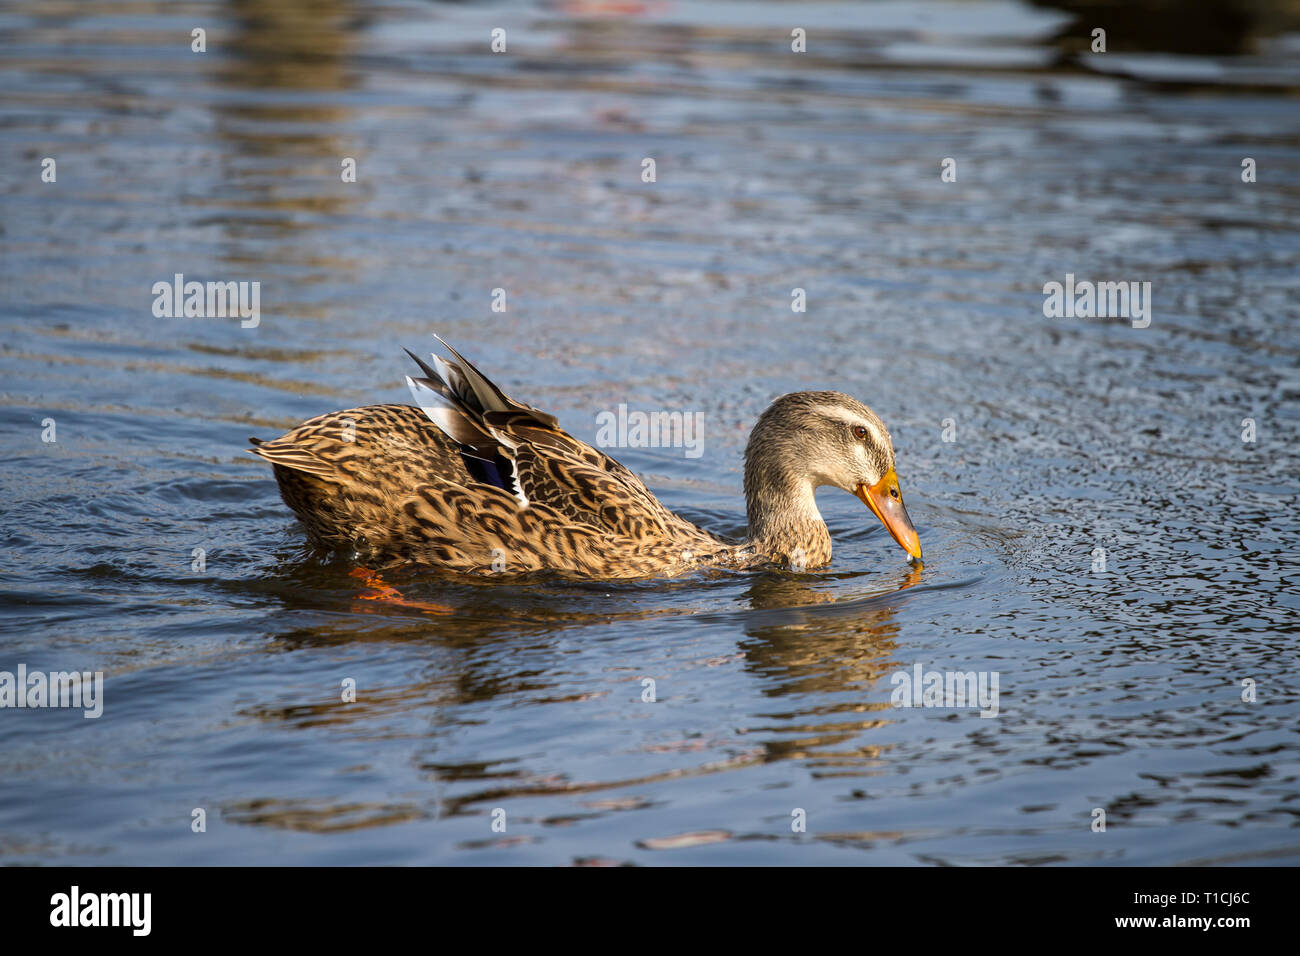 Female duck swimming in the water (Anatidae) Stock Photo